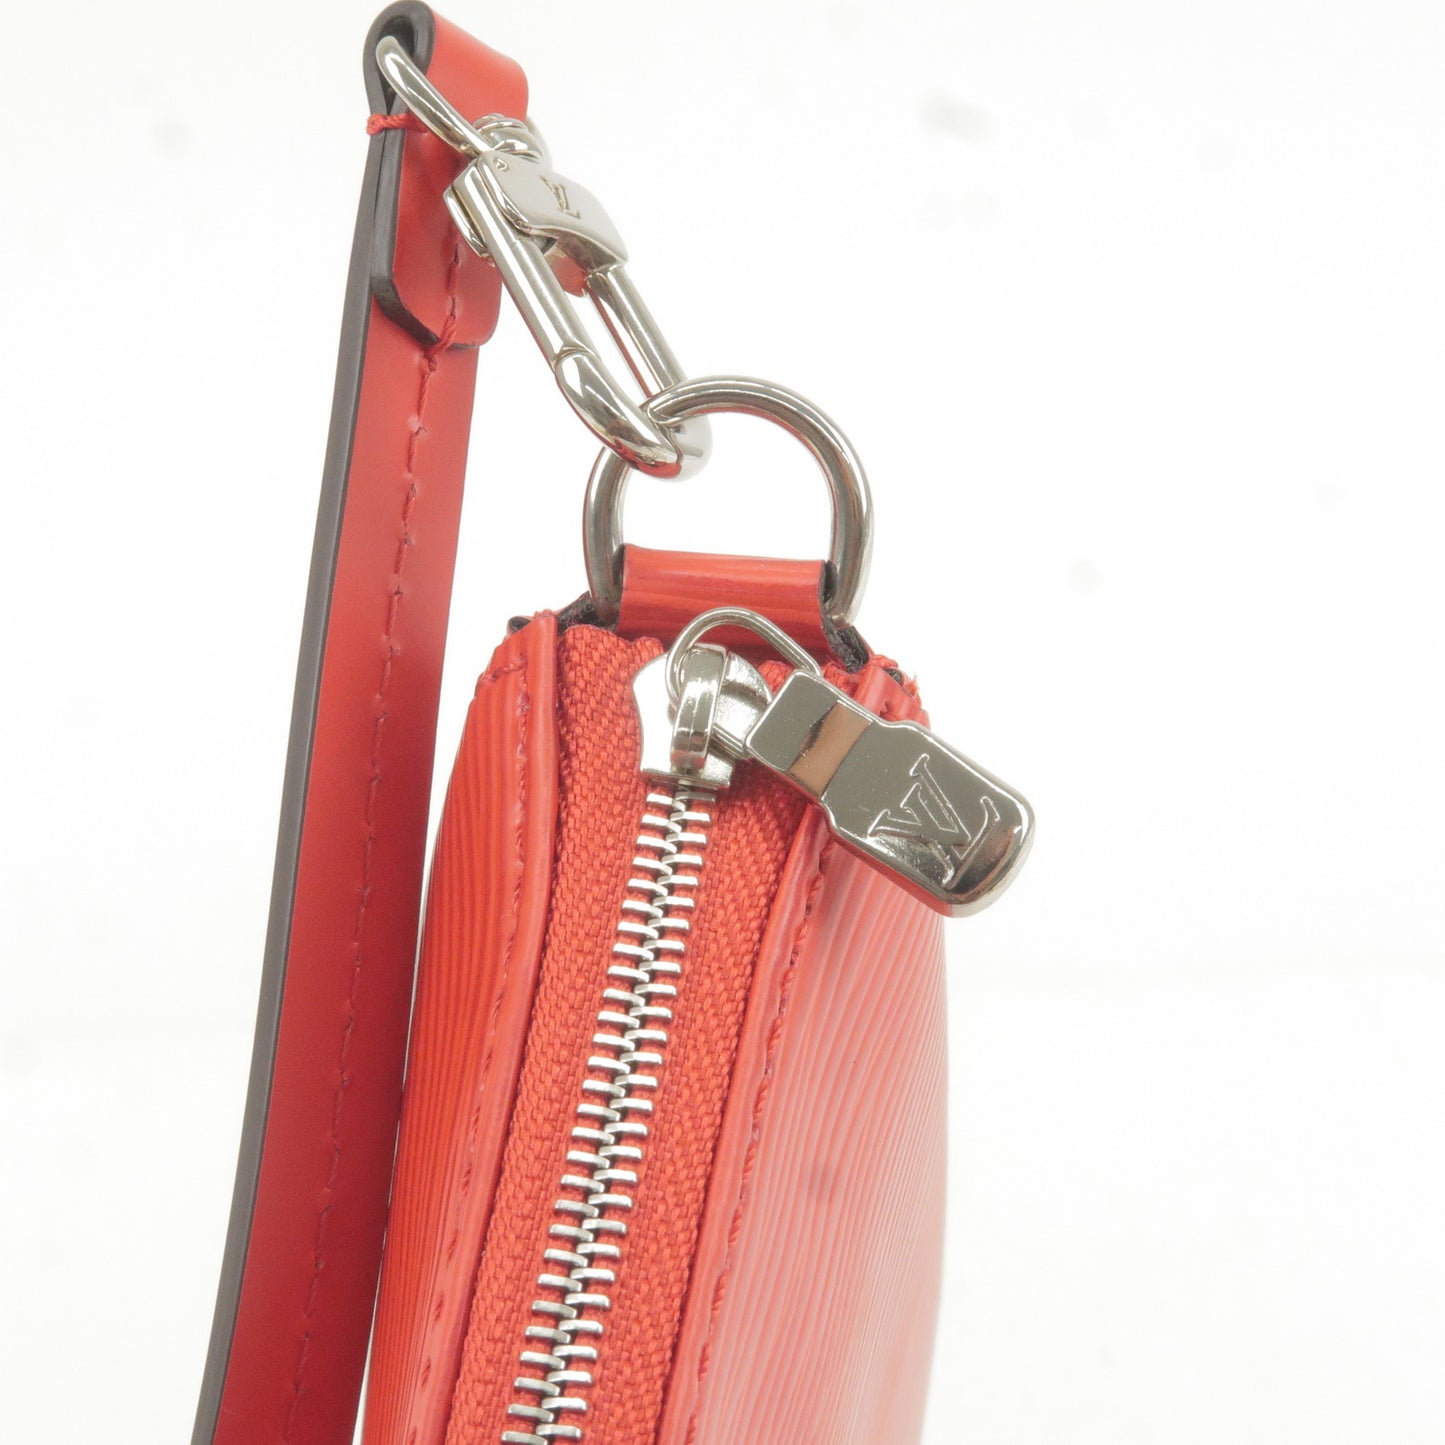 Louis Vuitton Epi Pochette Accessoires Pouch Hand Bag Red